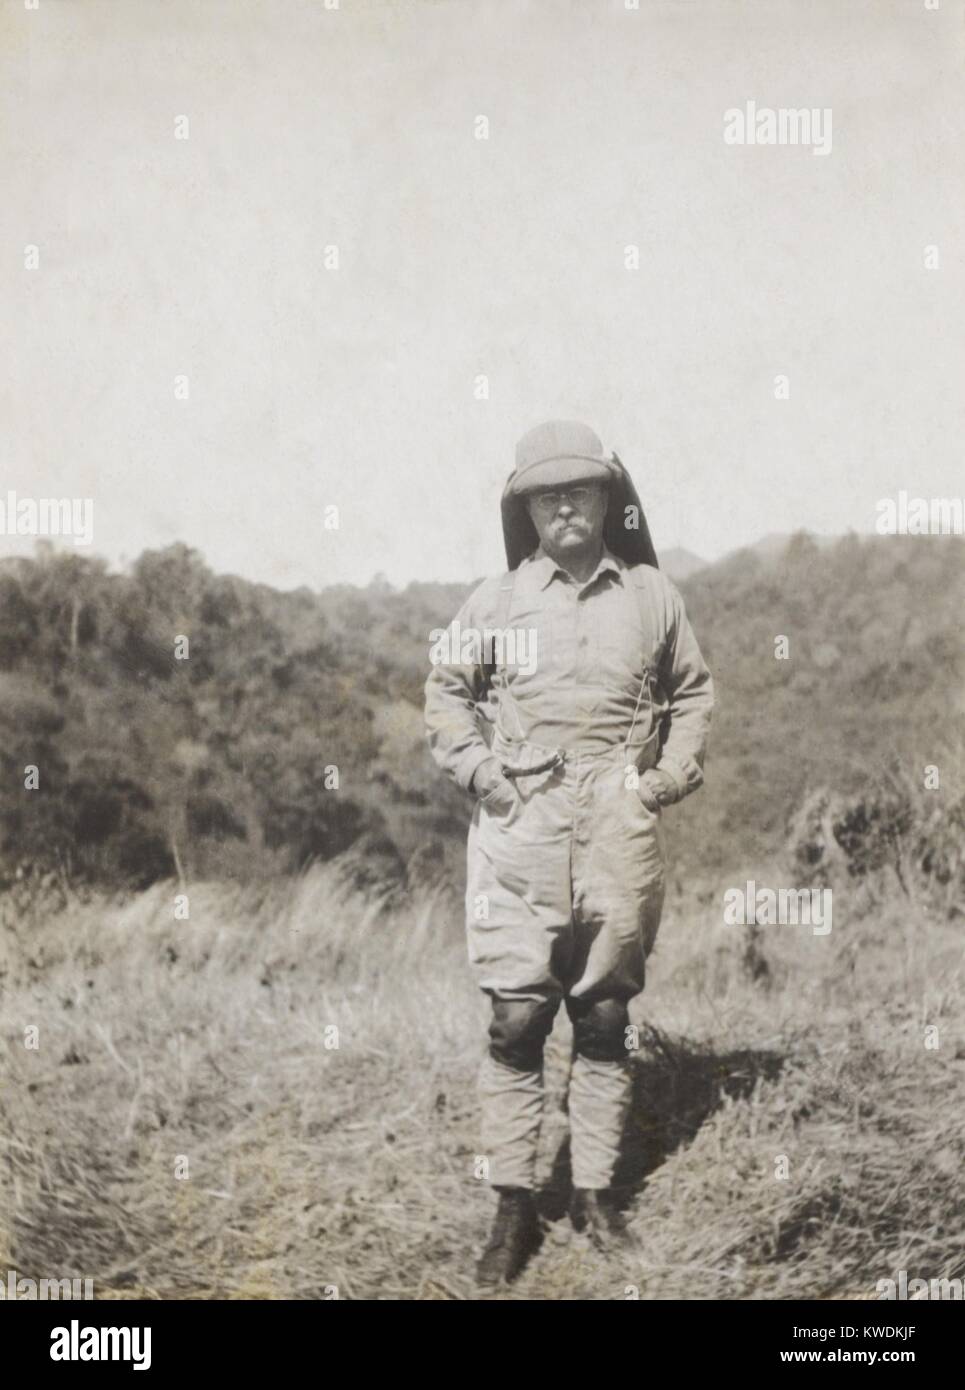 Theodore Roosevelt in der Afrikanischen Savanne Landschaft während der Safari. Juni 1909 bis März 1910 in British East Africa, belgischen Kongo und Sudan (BSLOC 2017 8 3). Stockfoto